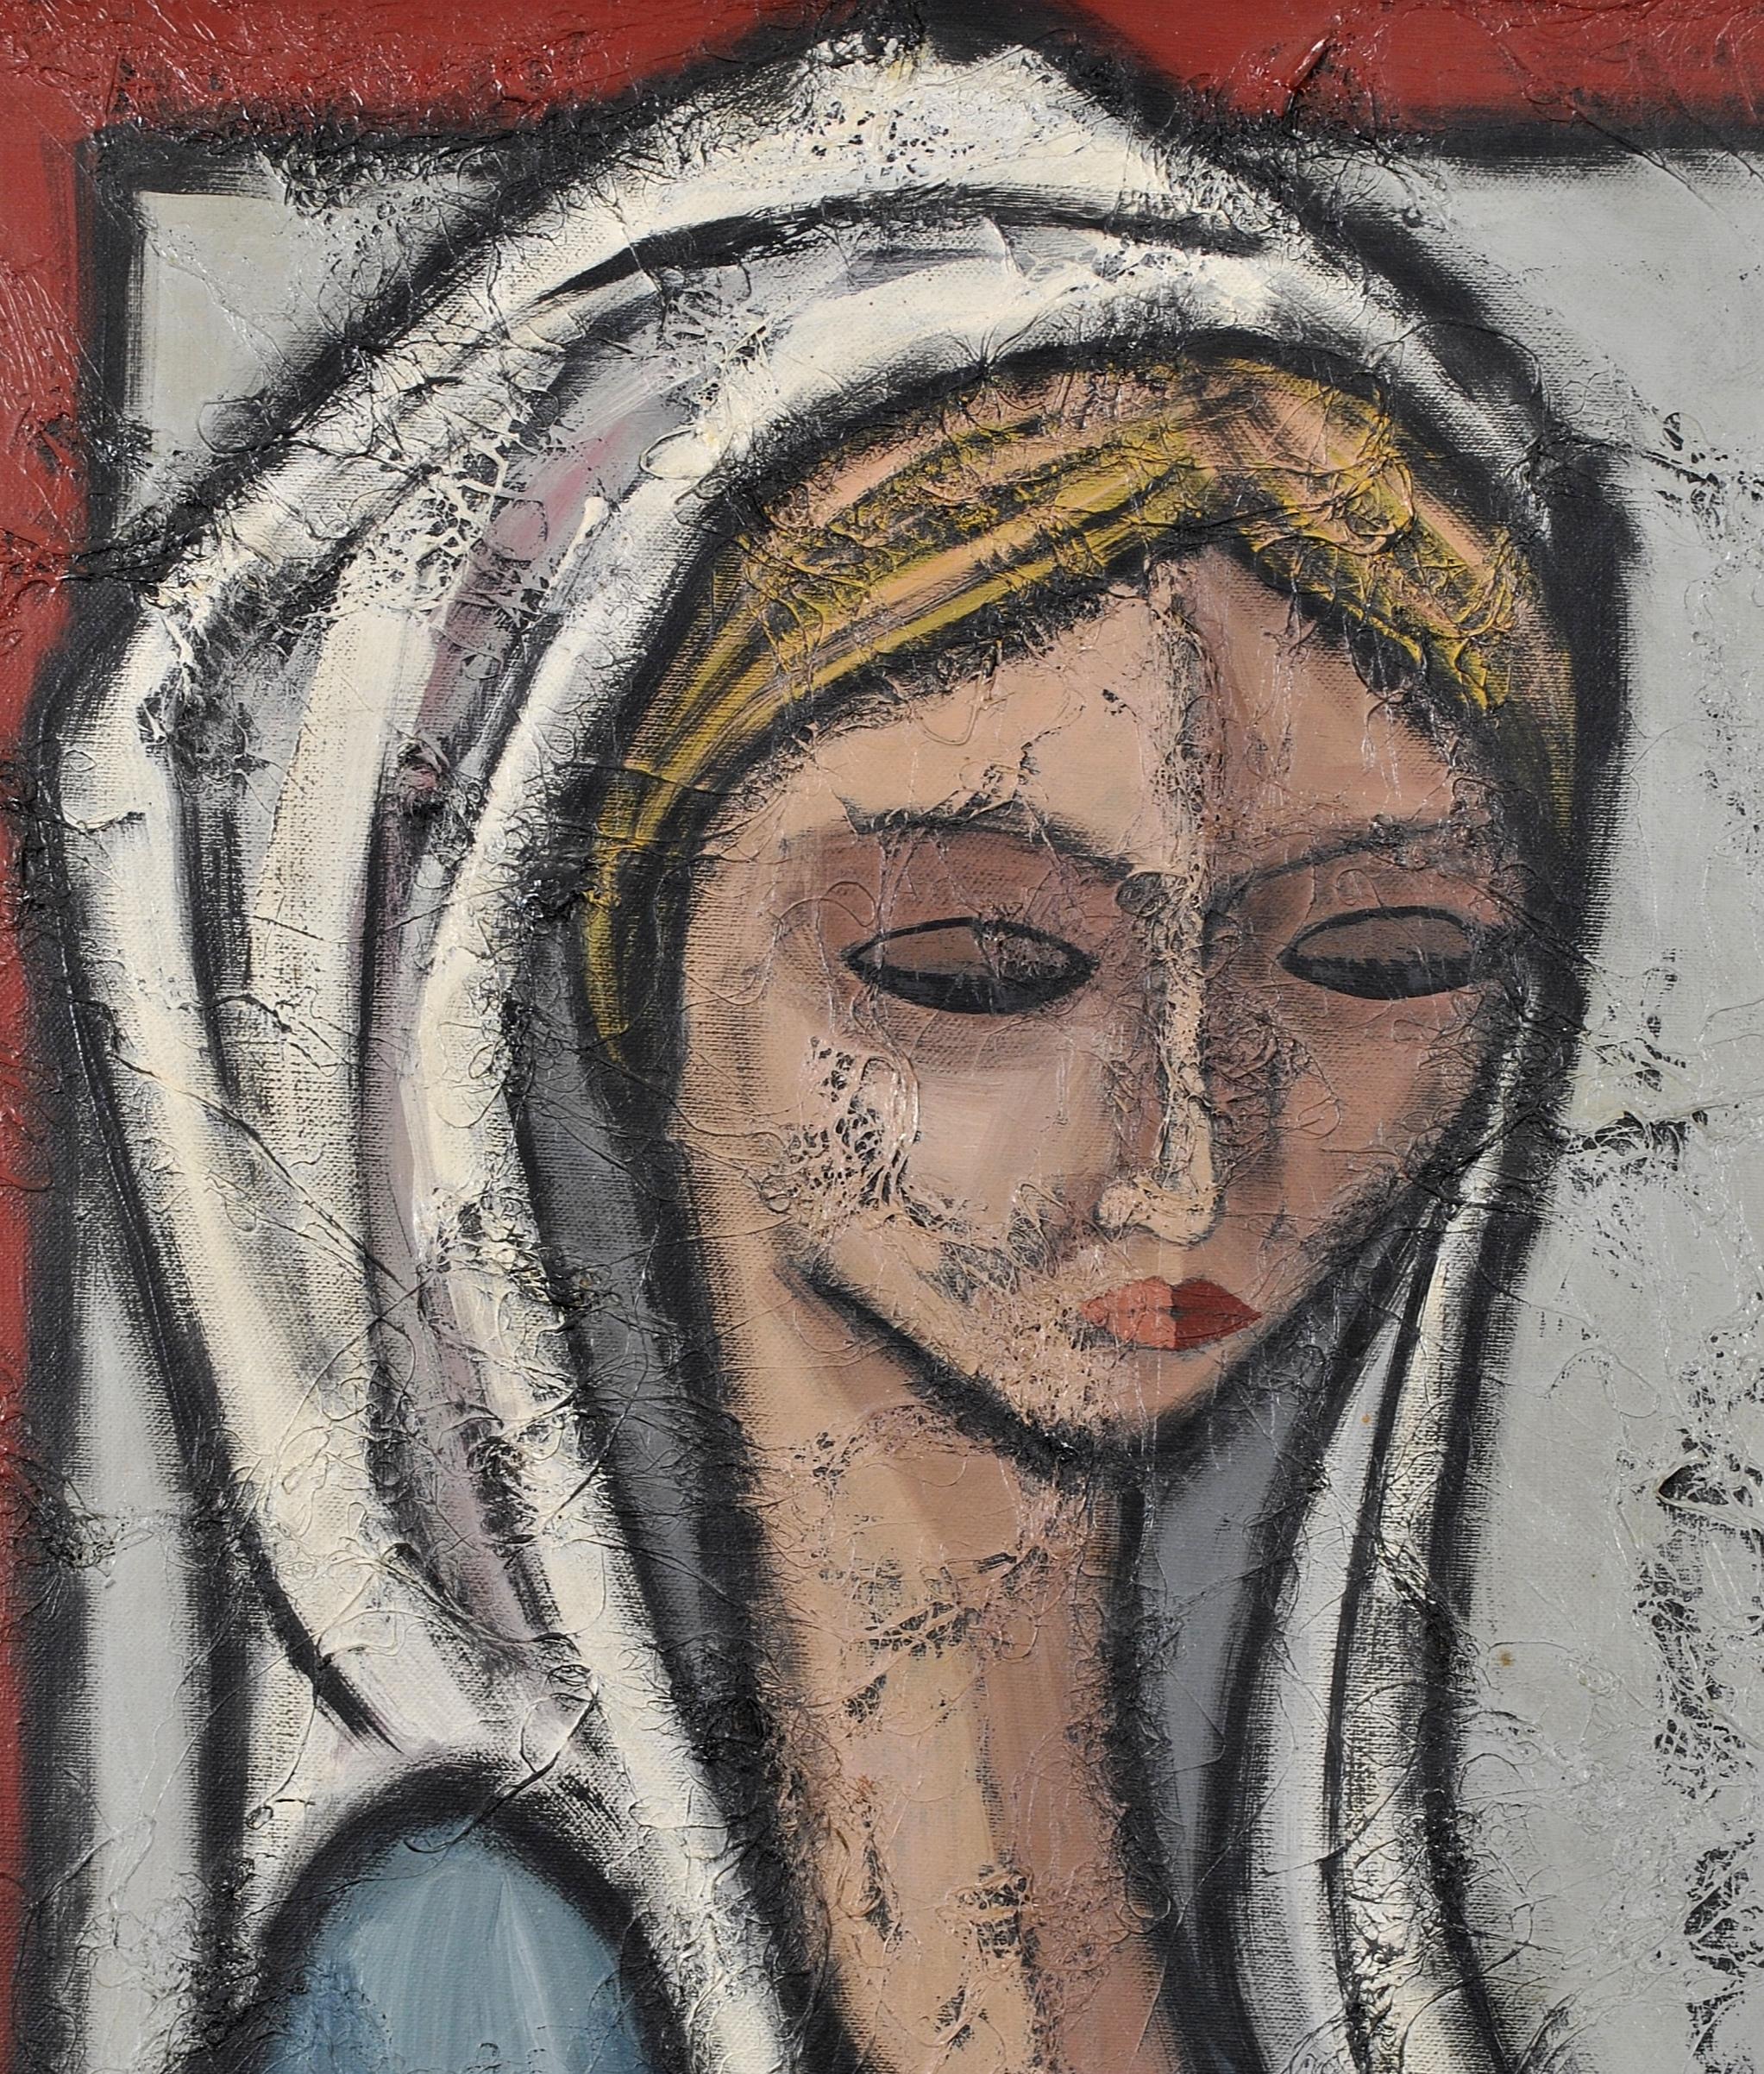 Magnifique huile sur toile du milieu du XXe siècle représentant une dame portant une coiffe blanche. 

Cette œuvre intrigante est peinte de manière experte avec des empâtements épais qui ont été construits sur toute la surface. 

Indistinctement